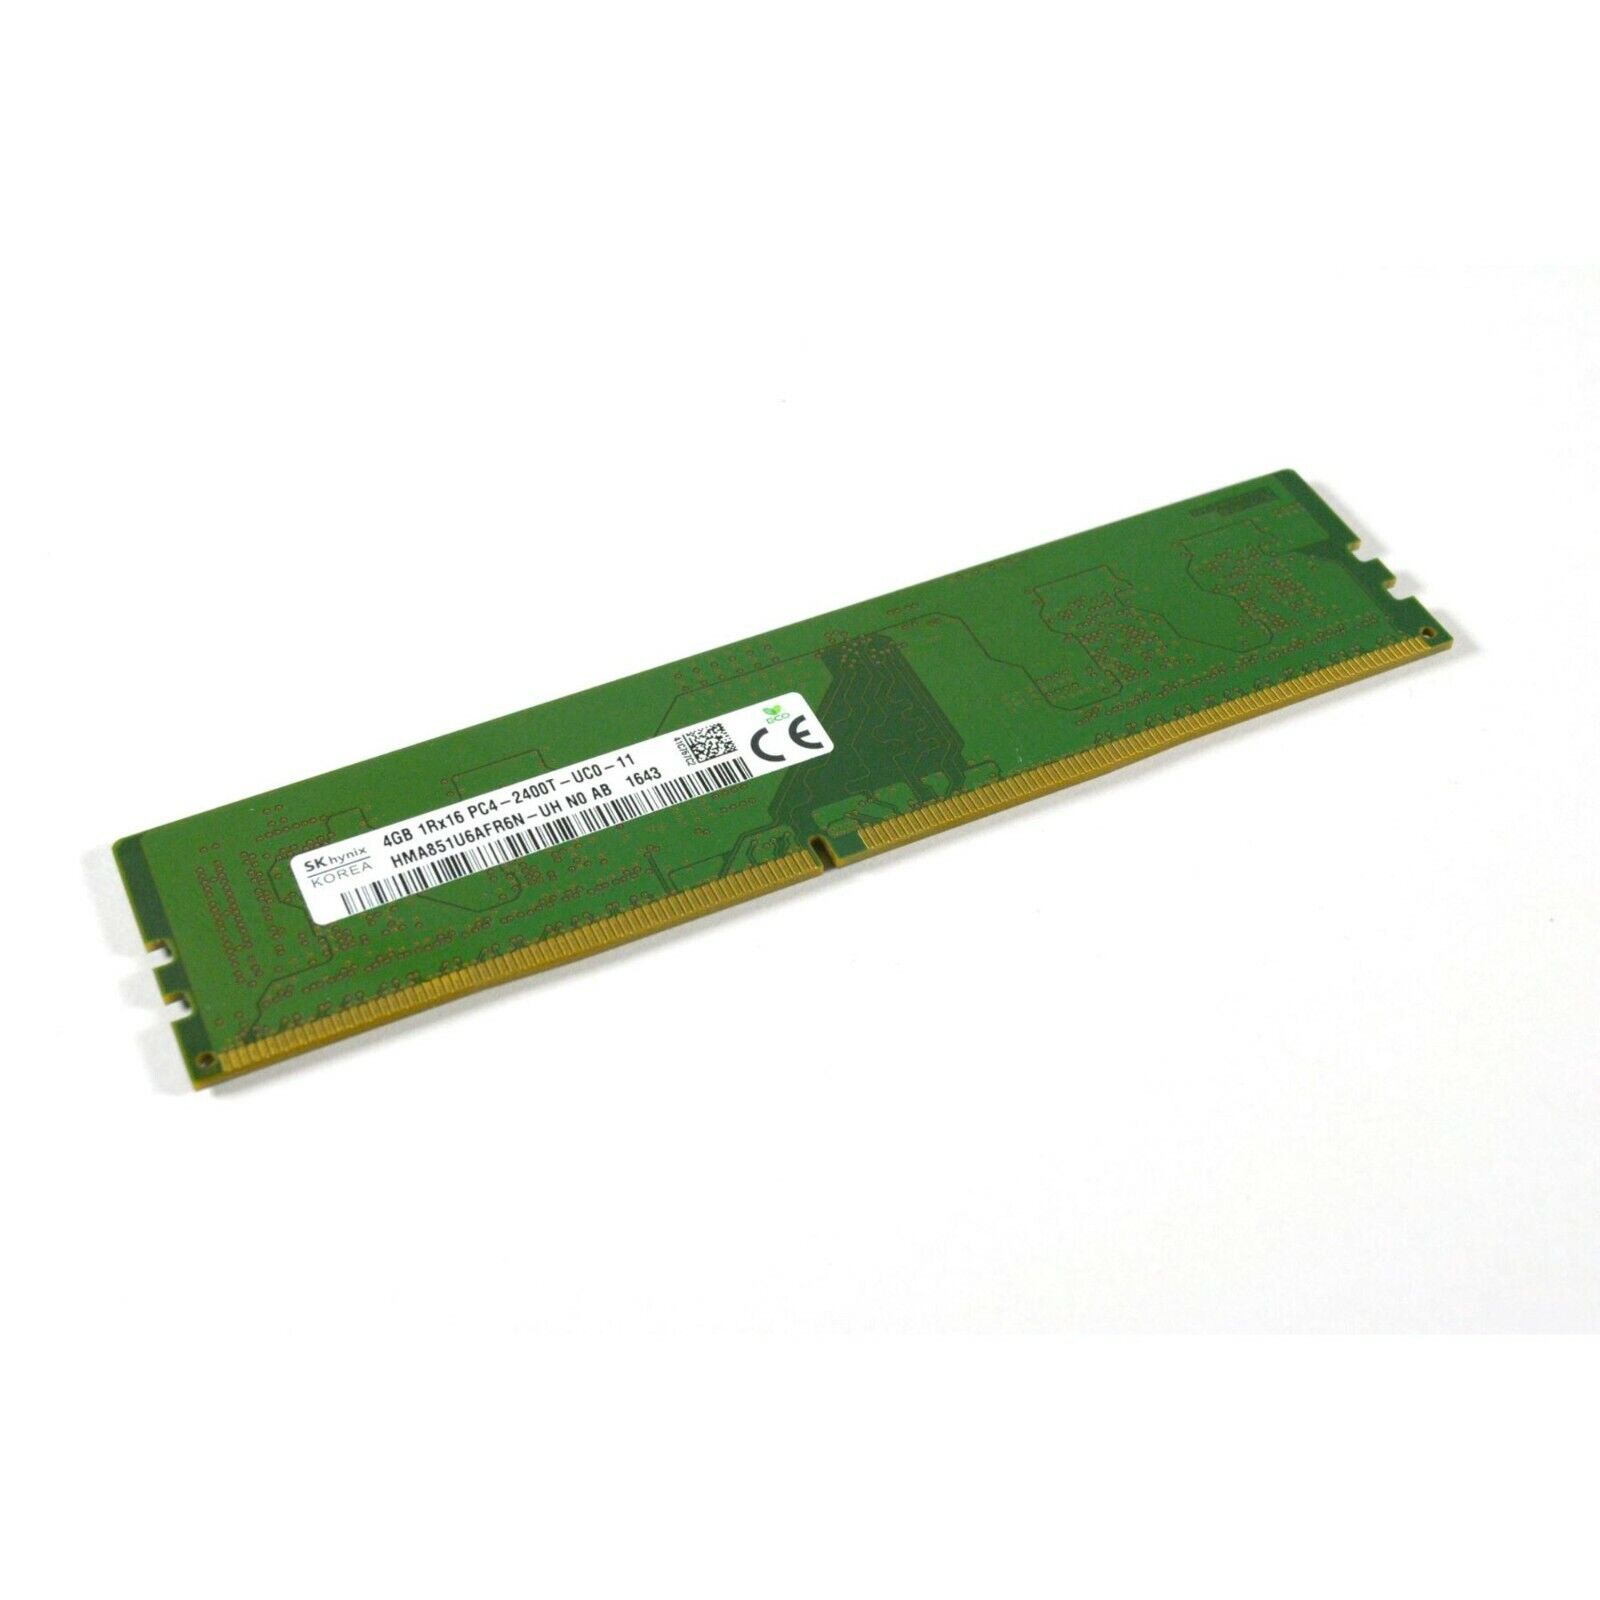 SKHynix PC4-19200 1RX16 4GB DDR4 SDRAM DESKTOP Memory Stick (HMA851U6AFR6NUH)